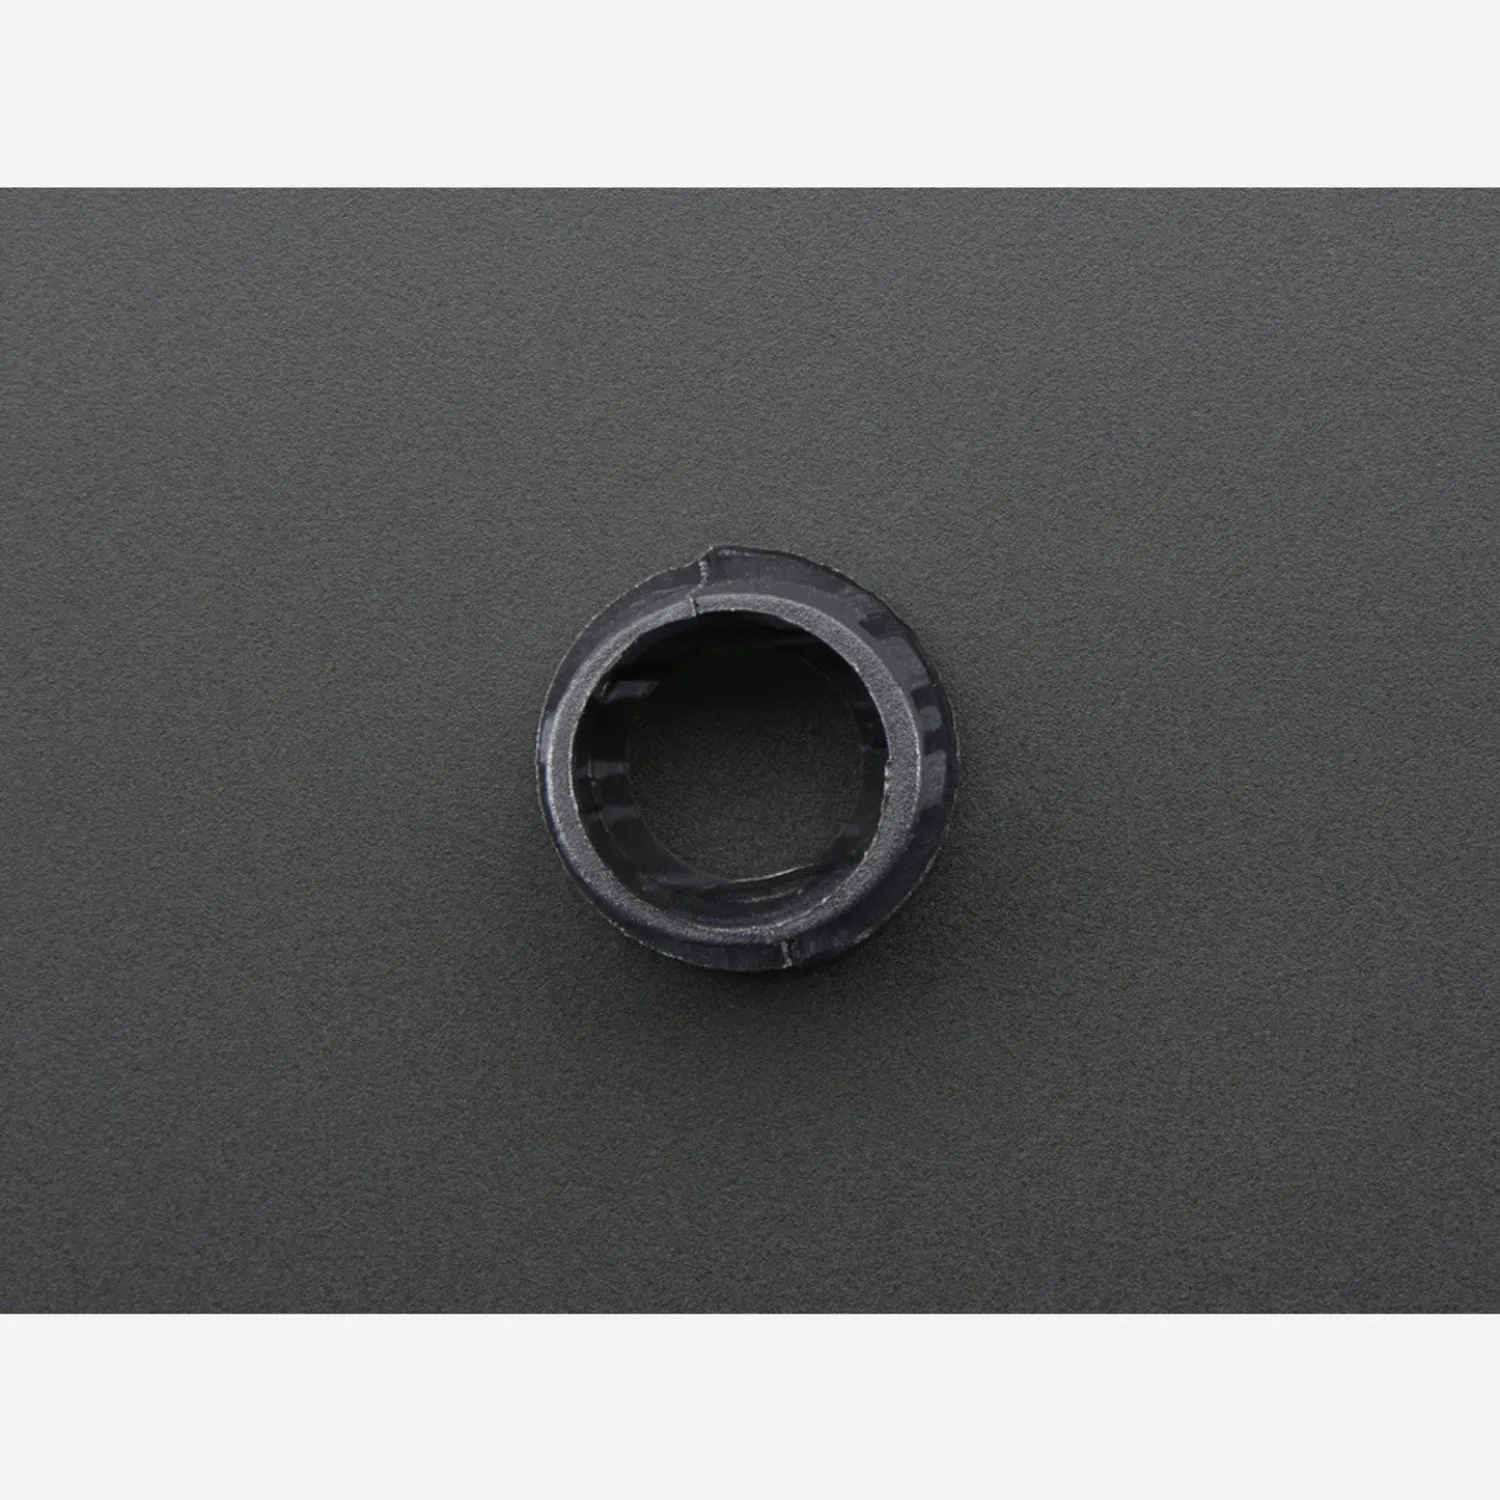 Photo of 8mm Plastic Bevel LED Holder - Pack of 5